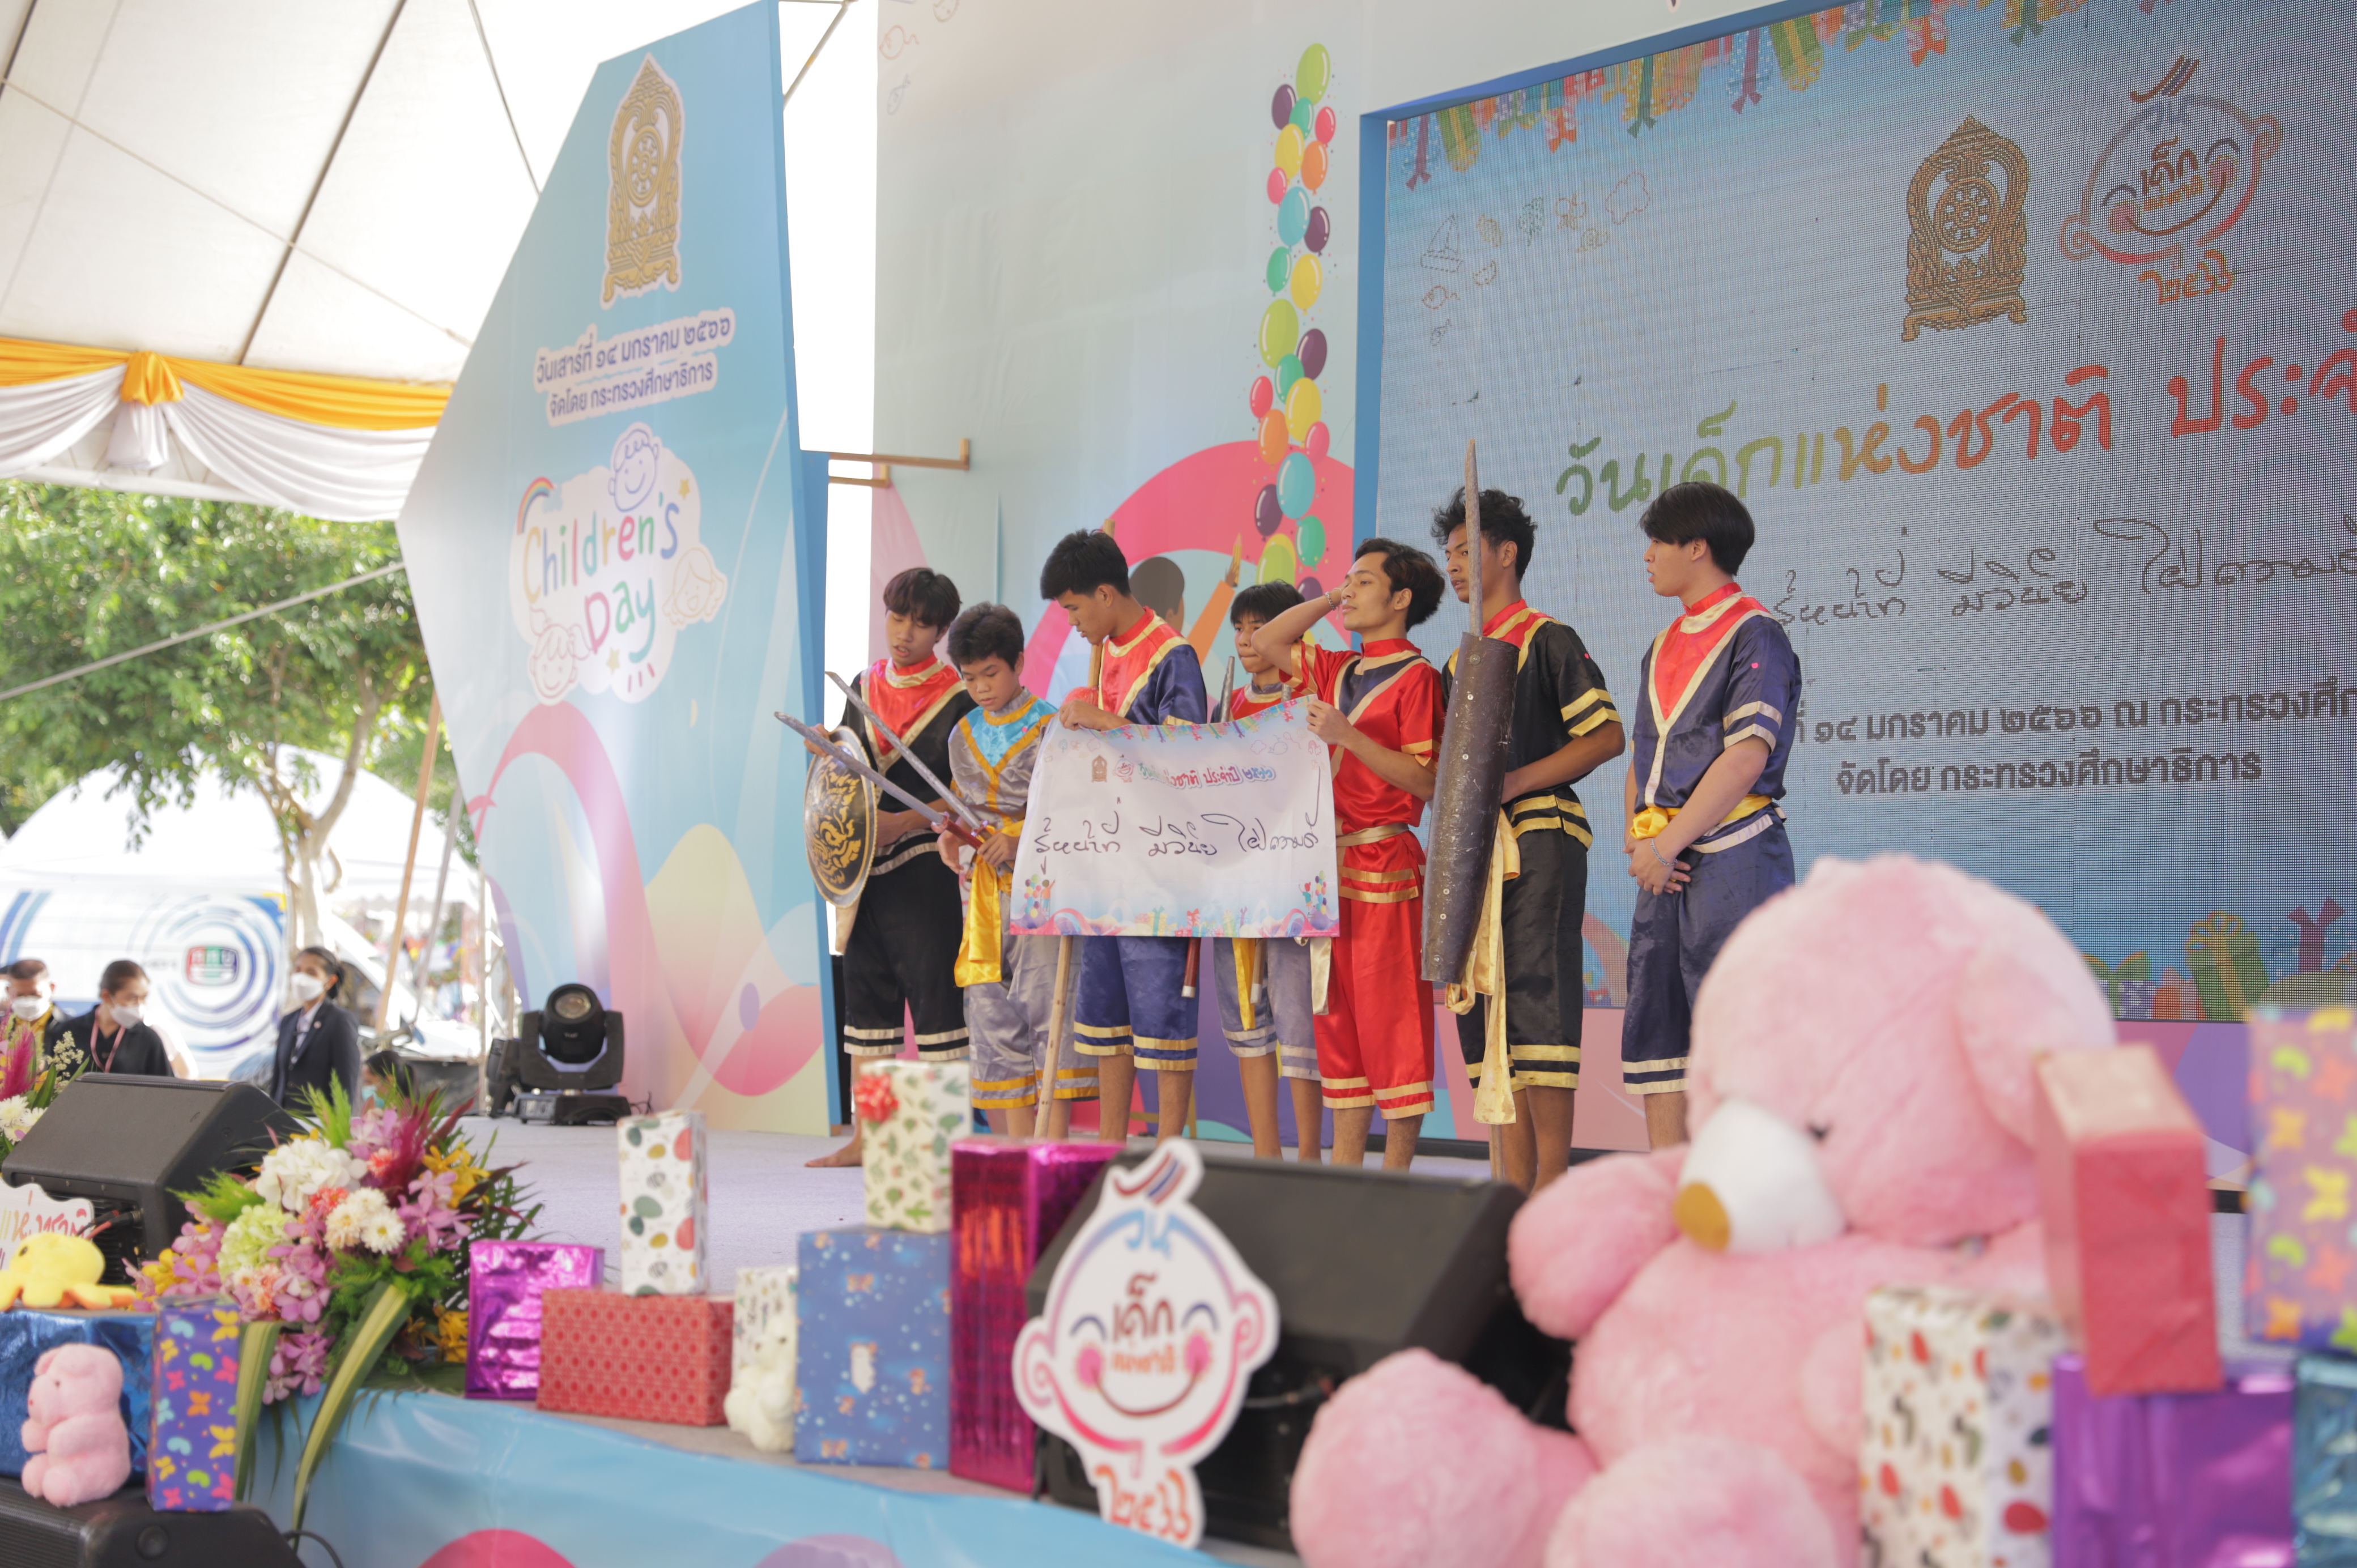 ศธ. ชูแนวคิด Children’s Day “เด็กดี วิถีไทย”  เพื่อเสริมสร้างให้เด็กและเยาวชนเป็น “คนเก่ง คนดี สามัคคี รู้จักหน้าที่ของตนเอง”  ในงานวันเด็กแห่งชาติ 2566